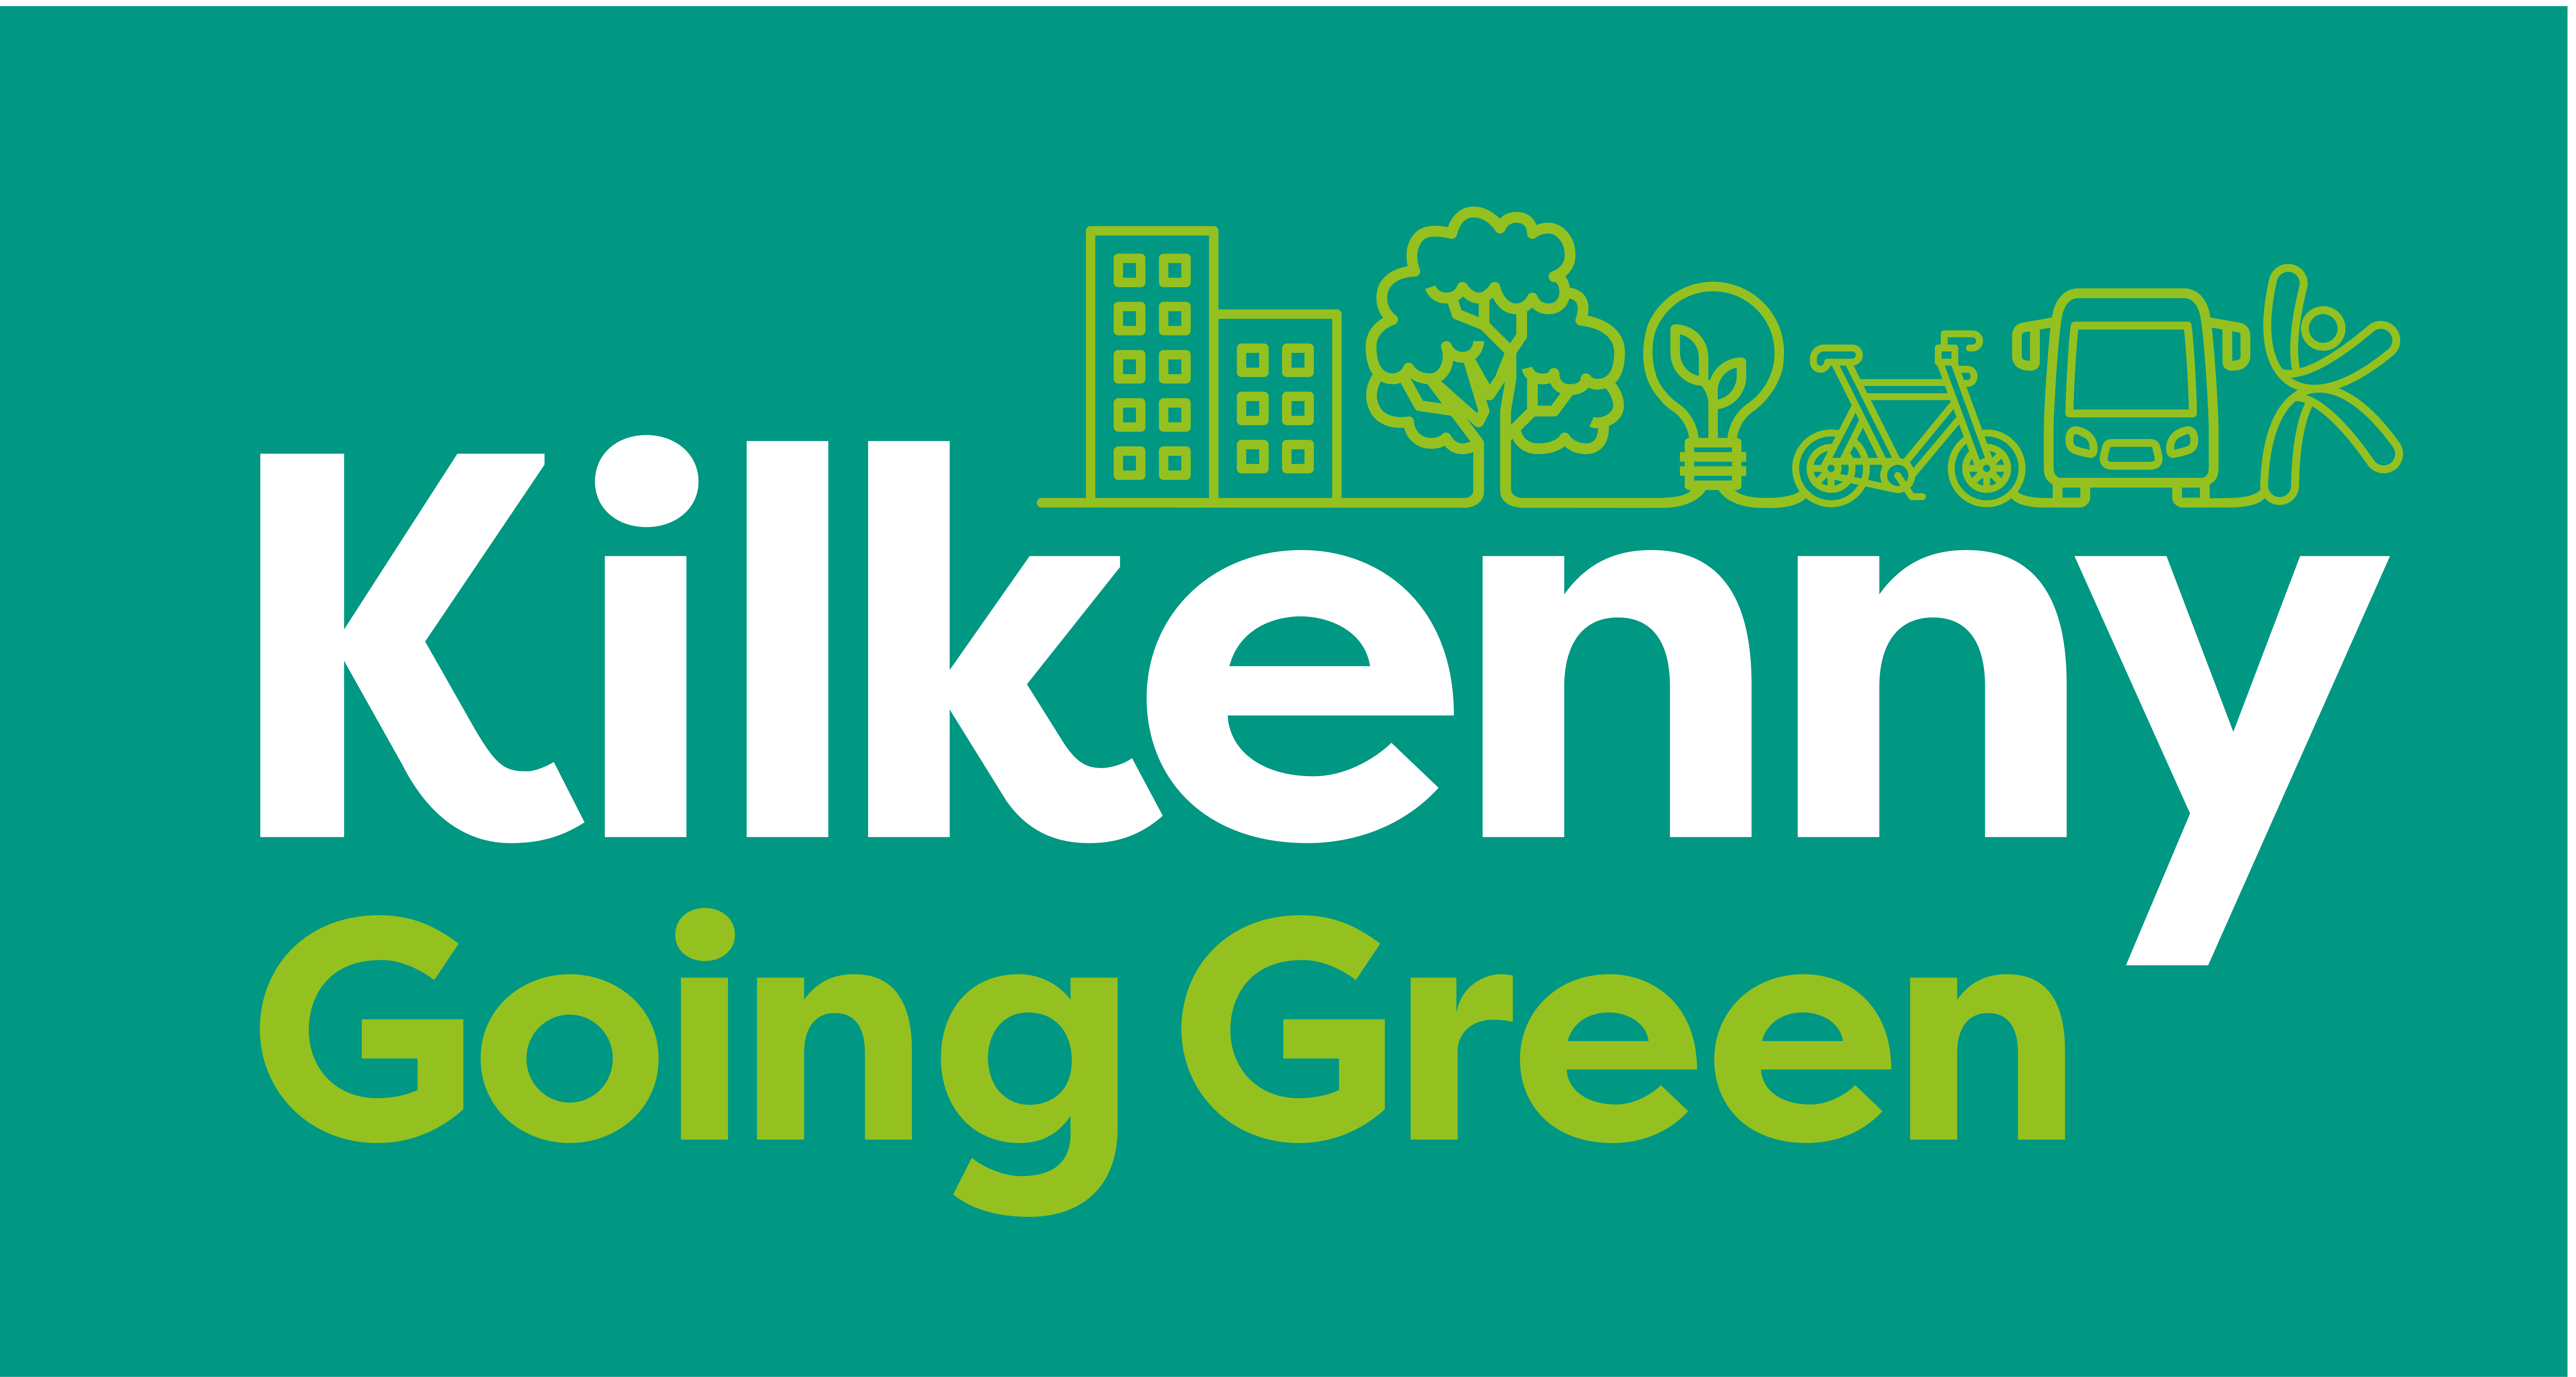 Kilkenny-Going-Green_main-brand-cor-revertida